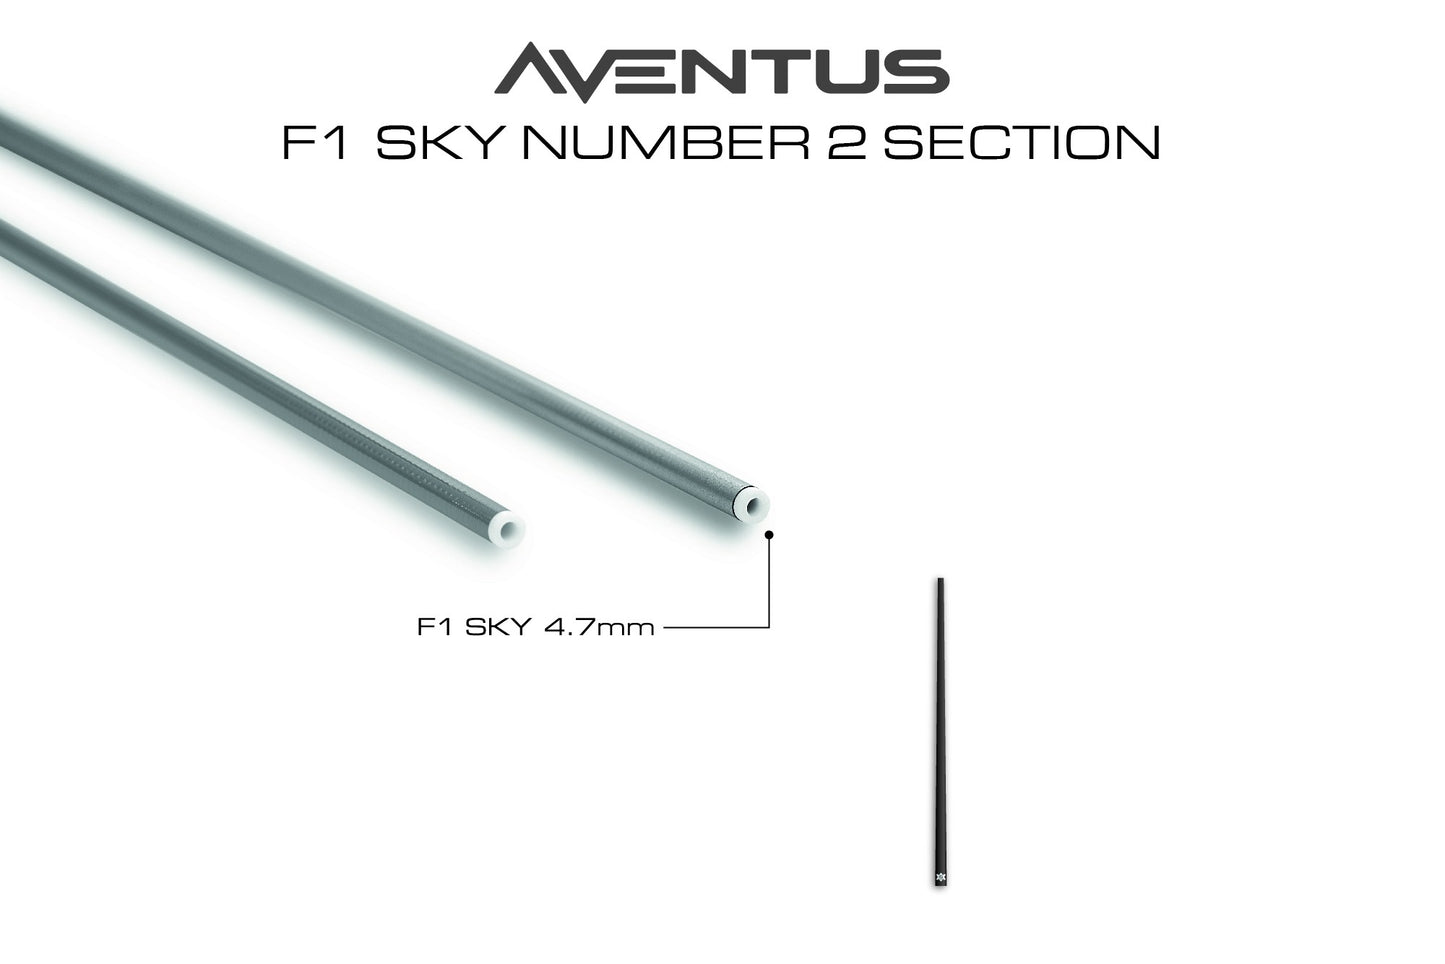 Aventus F1 Sky Section No.2